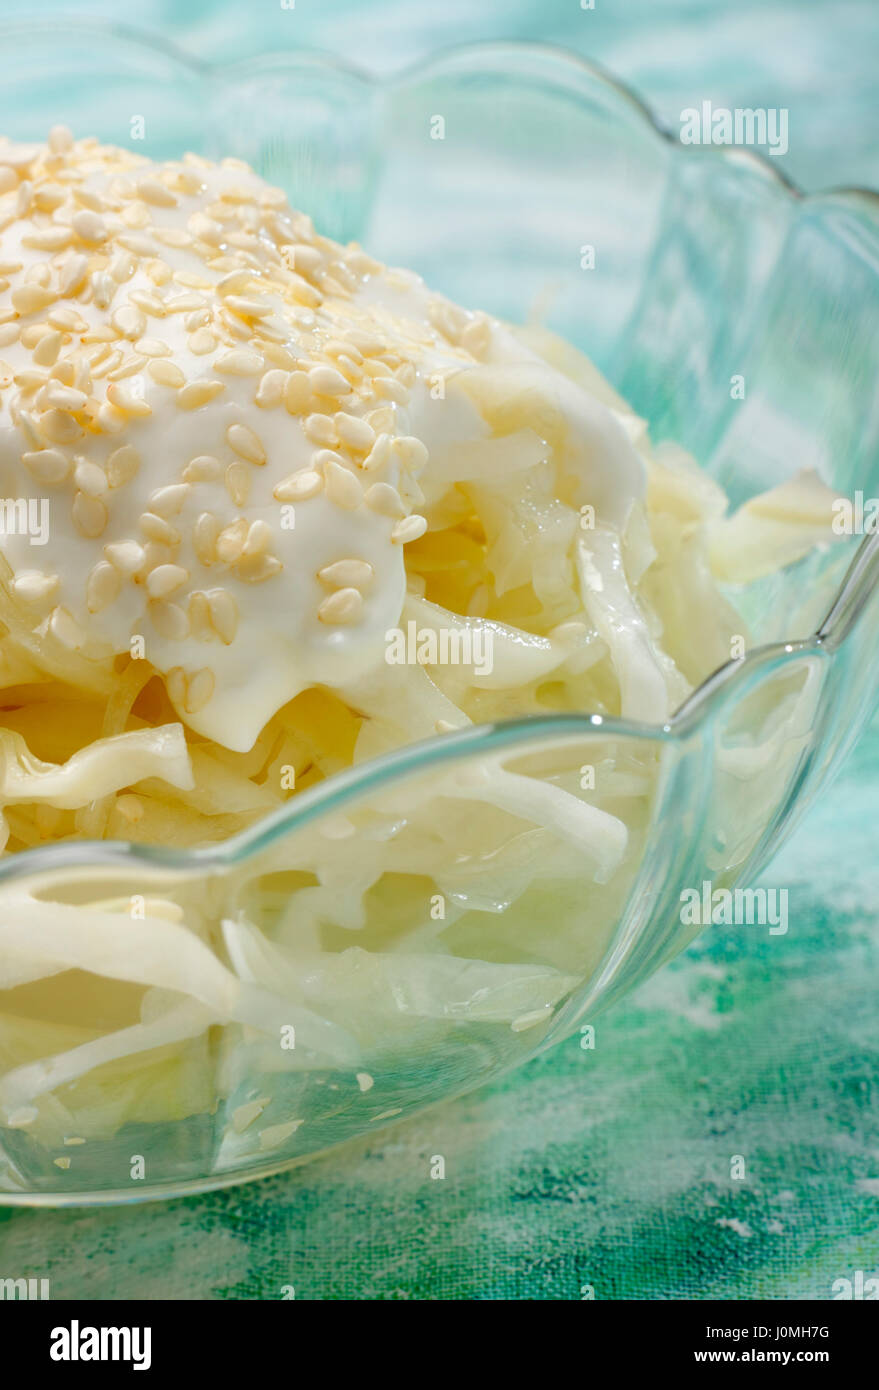 Dettaglio di bianco insalata di cavolo con panna e topping di sesamo in recipiente di vetro Foto Stock